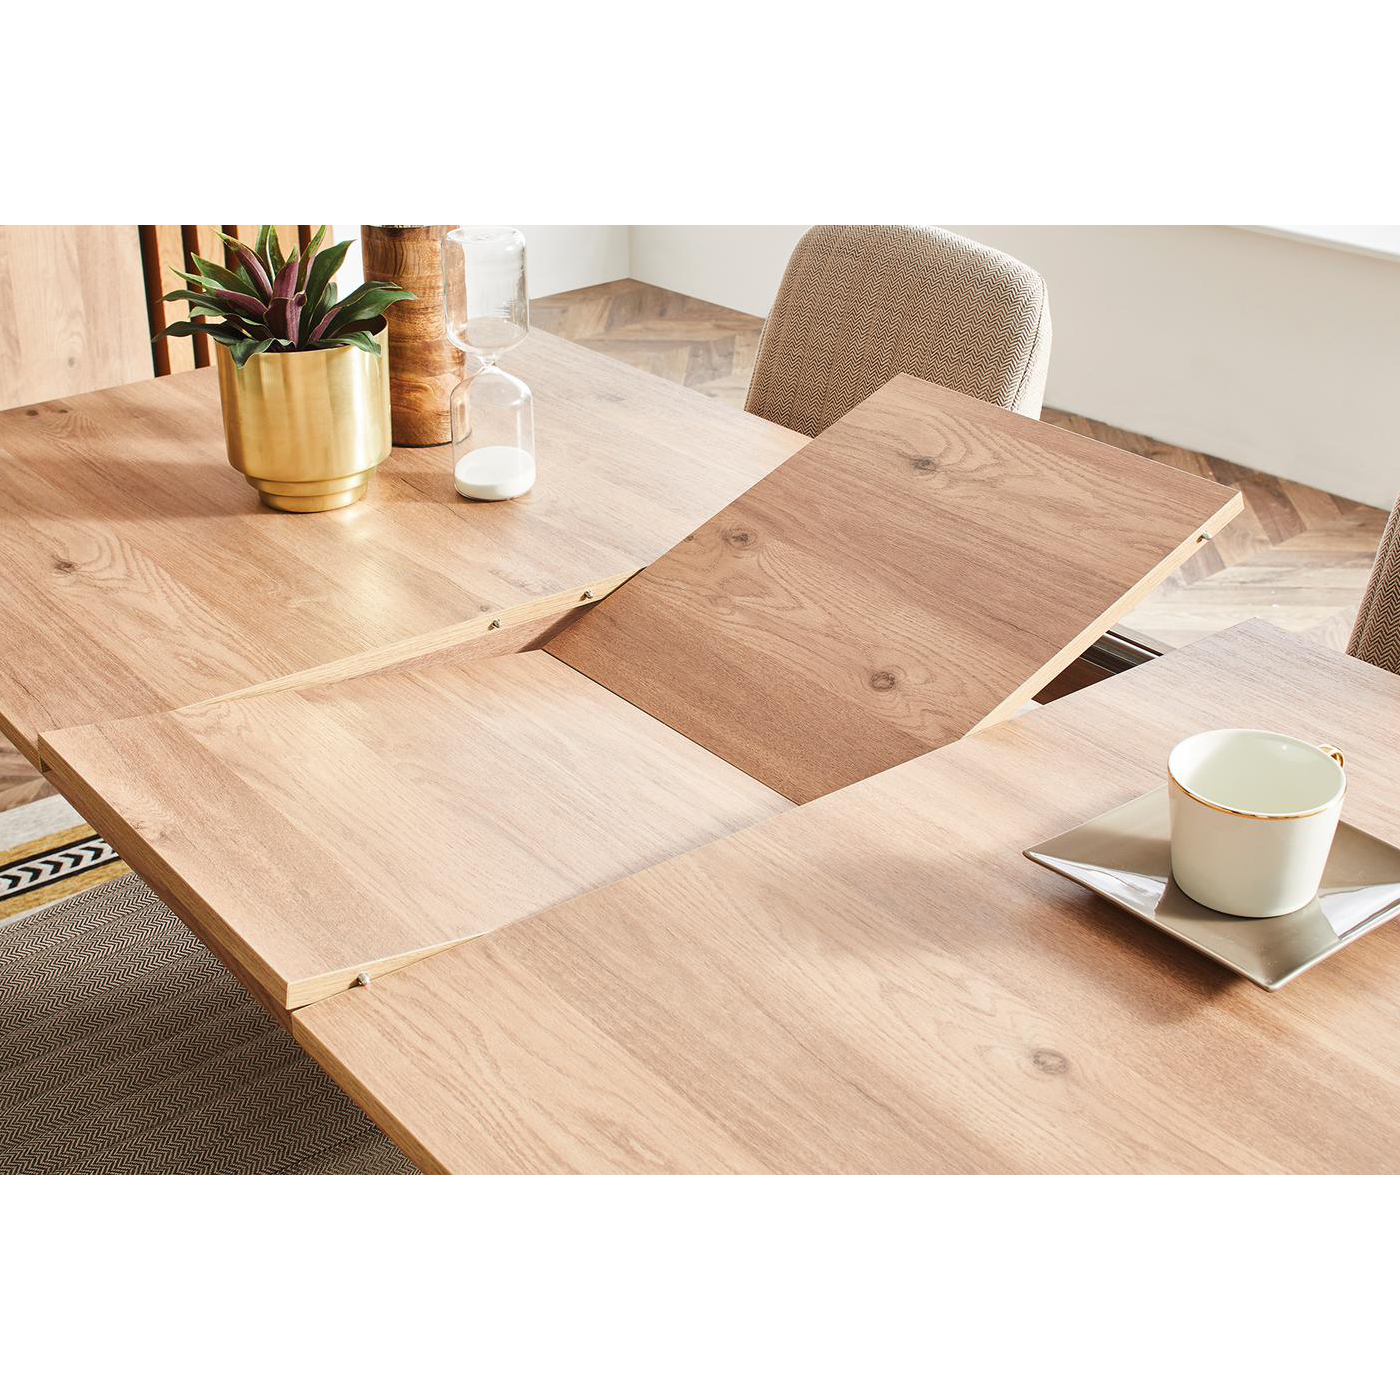 Стол обеденный Enza Home Sona, прямоугольный, раскладной, размер 160(200)х90х76 см07.182.0539.0000.0000.0000